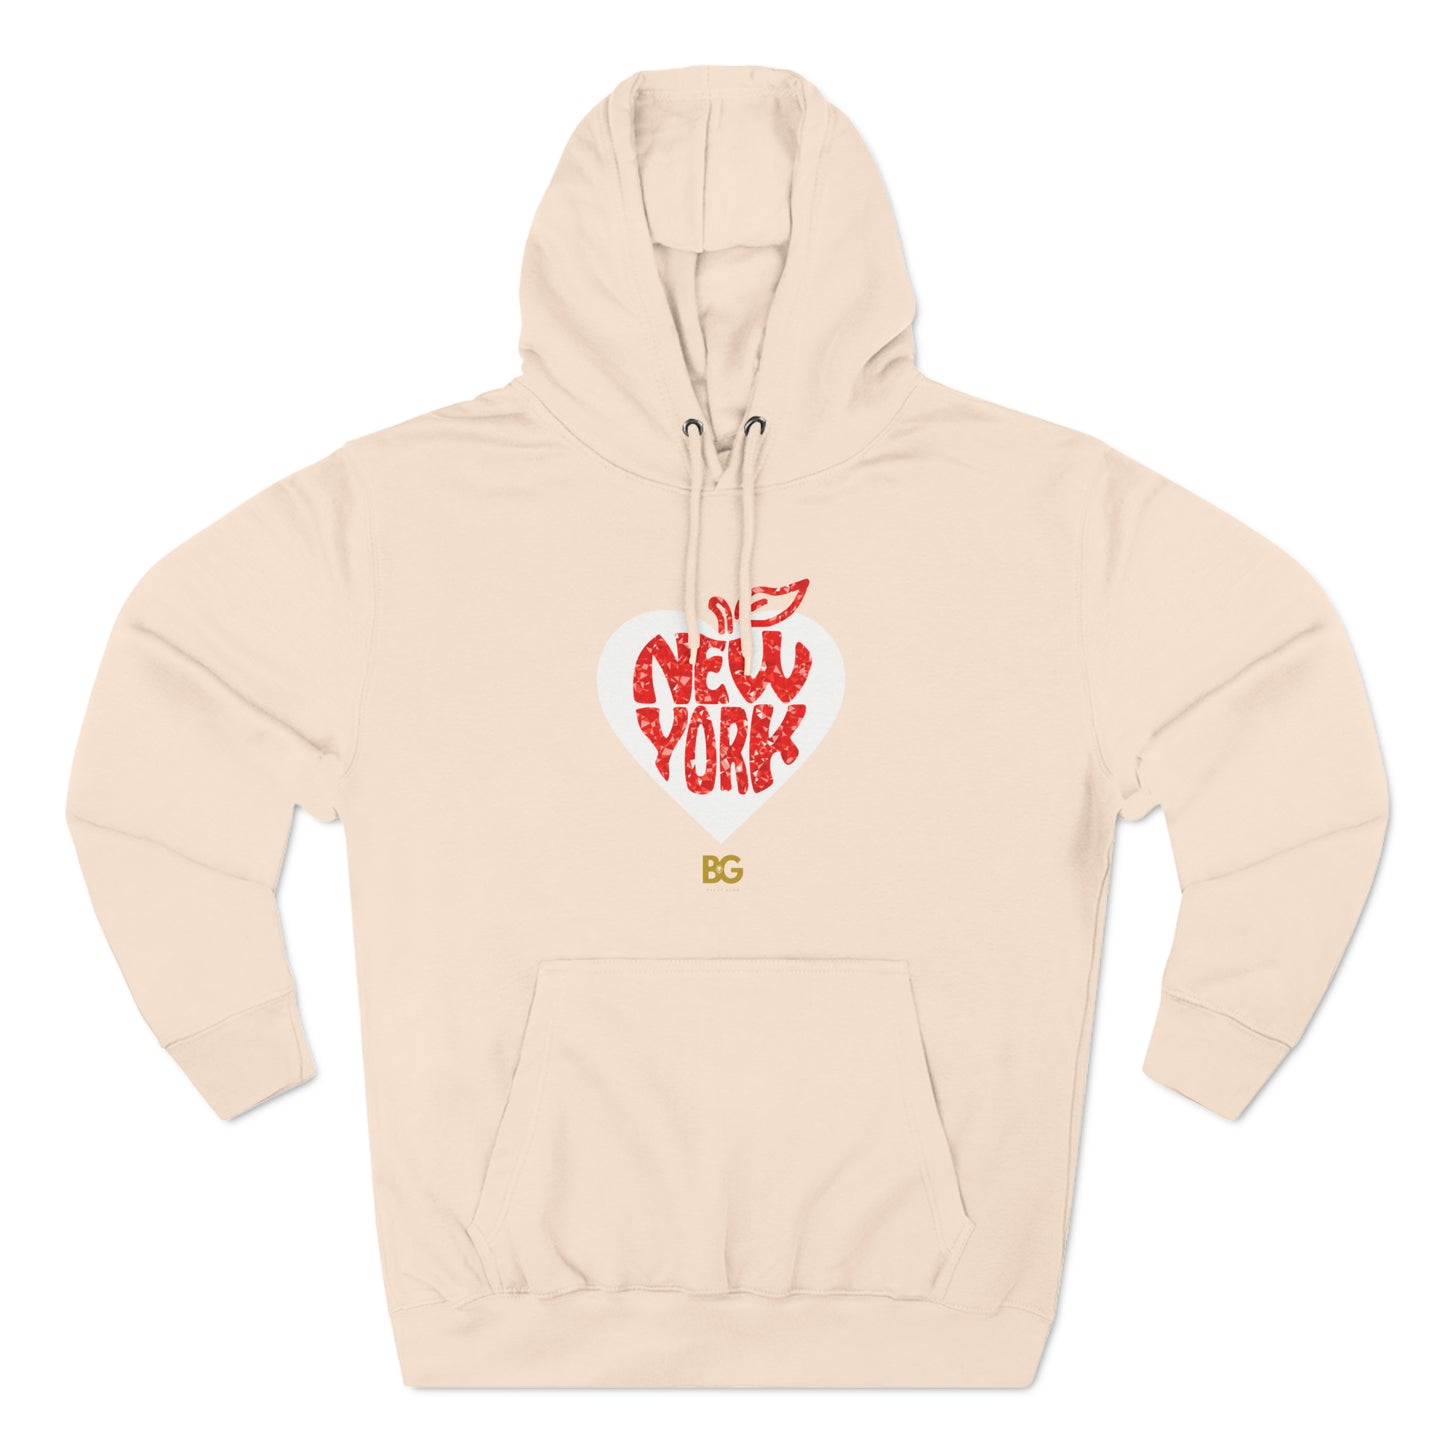 BG "Heart New York" Premium Pullover Hoodie